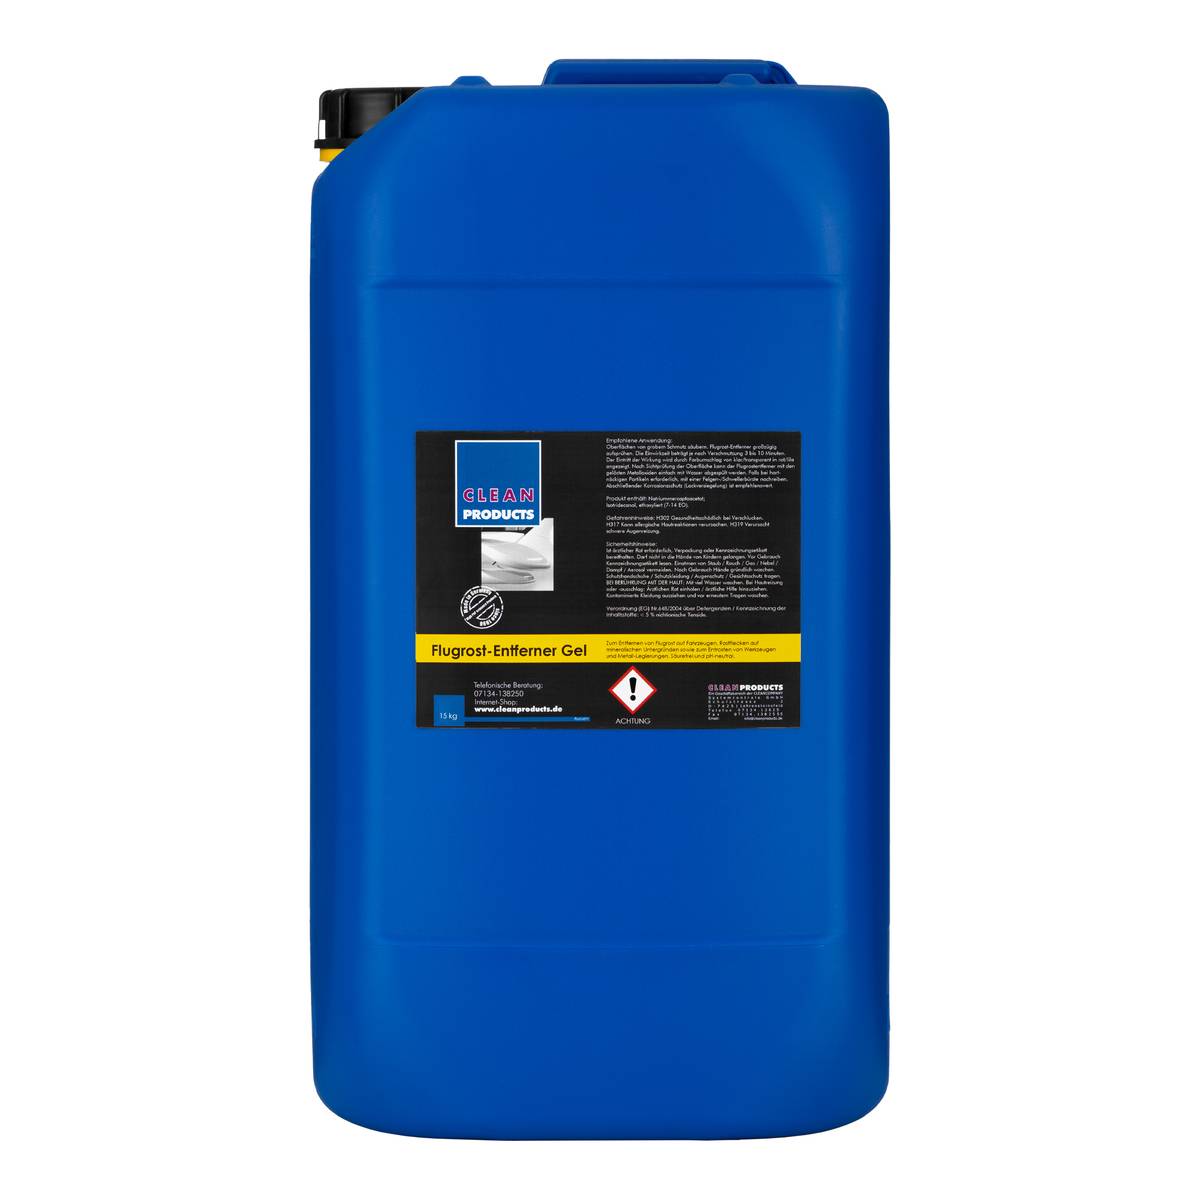 Flugrost-Entferner Gel - Säurefrei - pH-neutral - 15 Liter - CLEANPRODUCTS